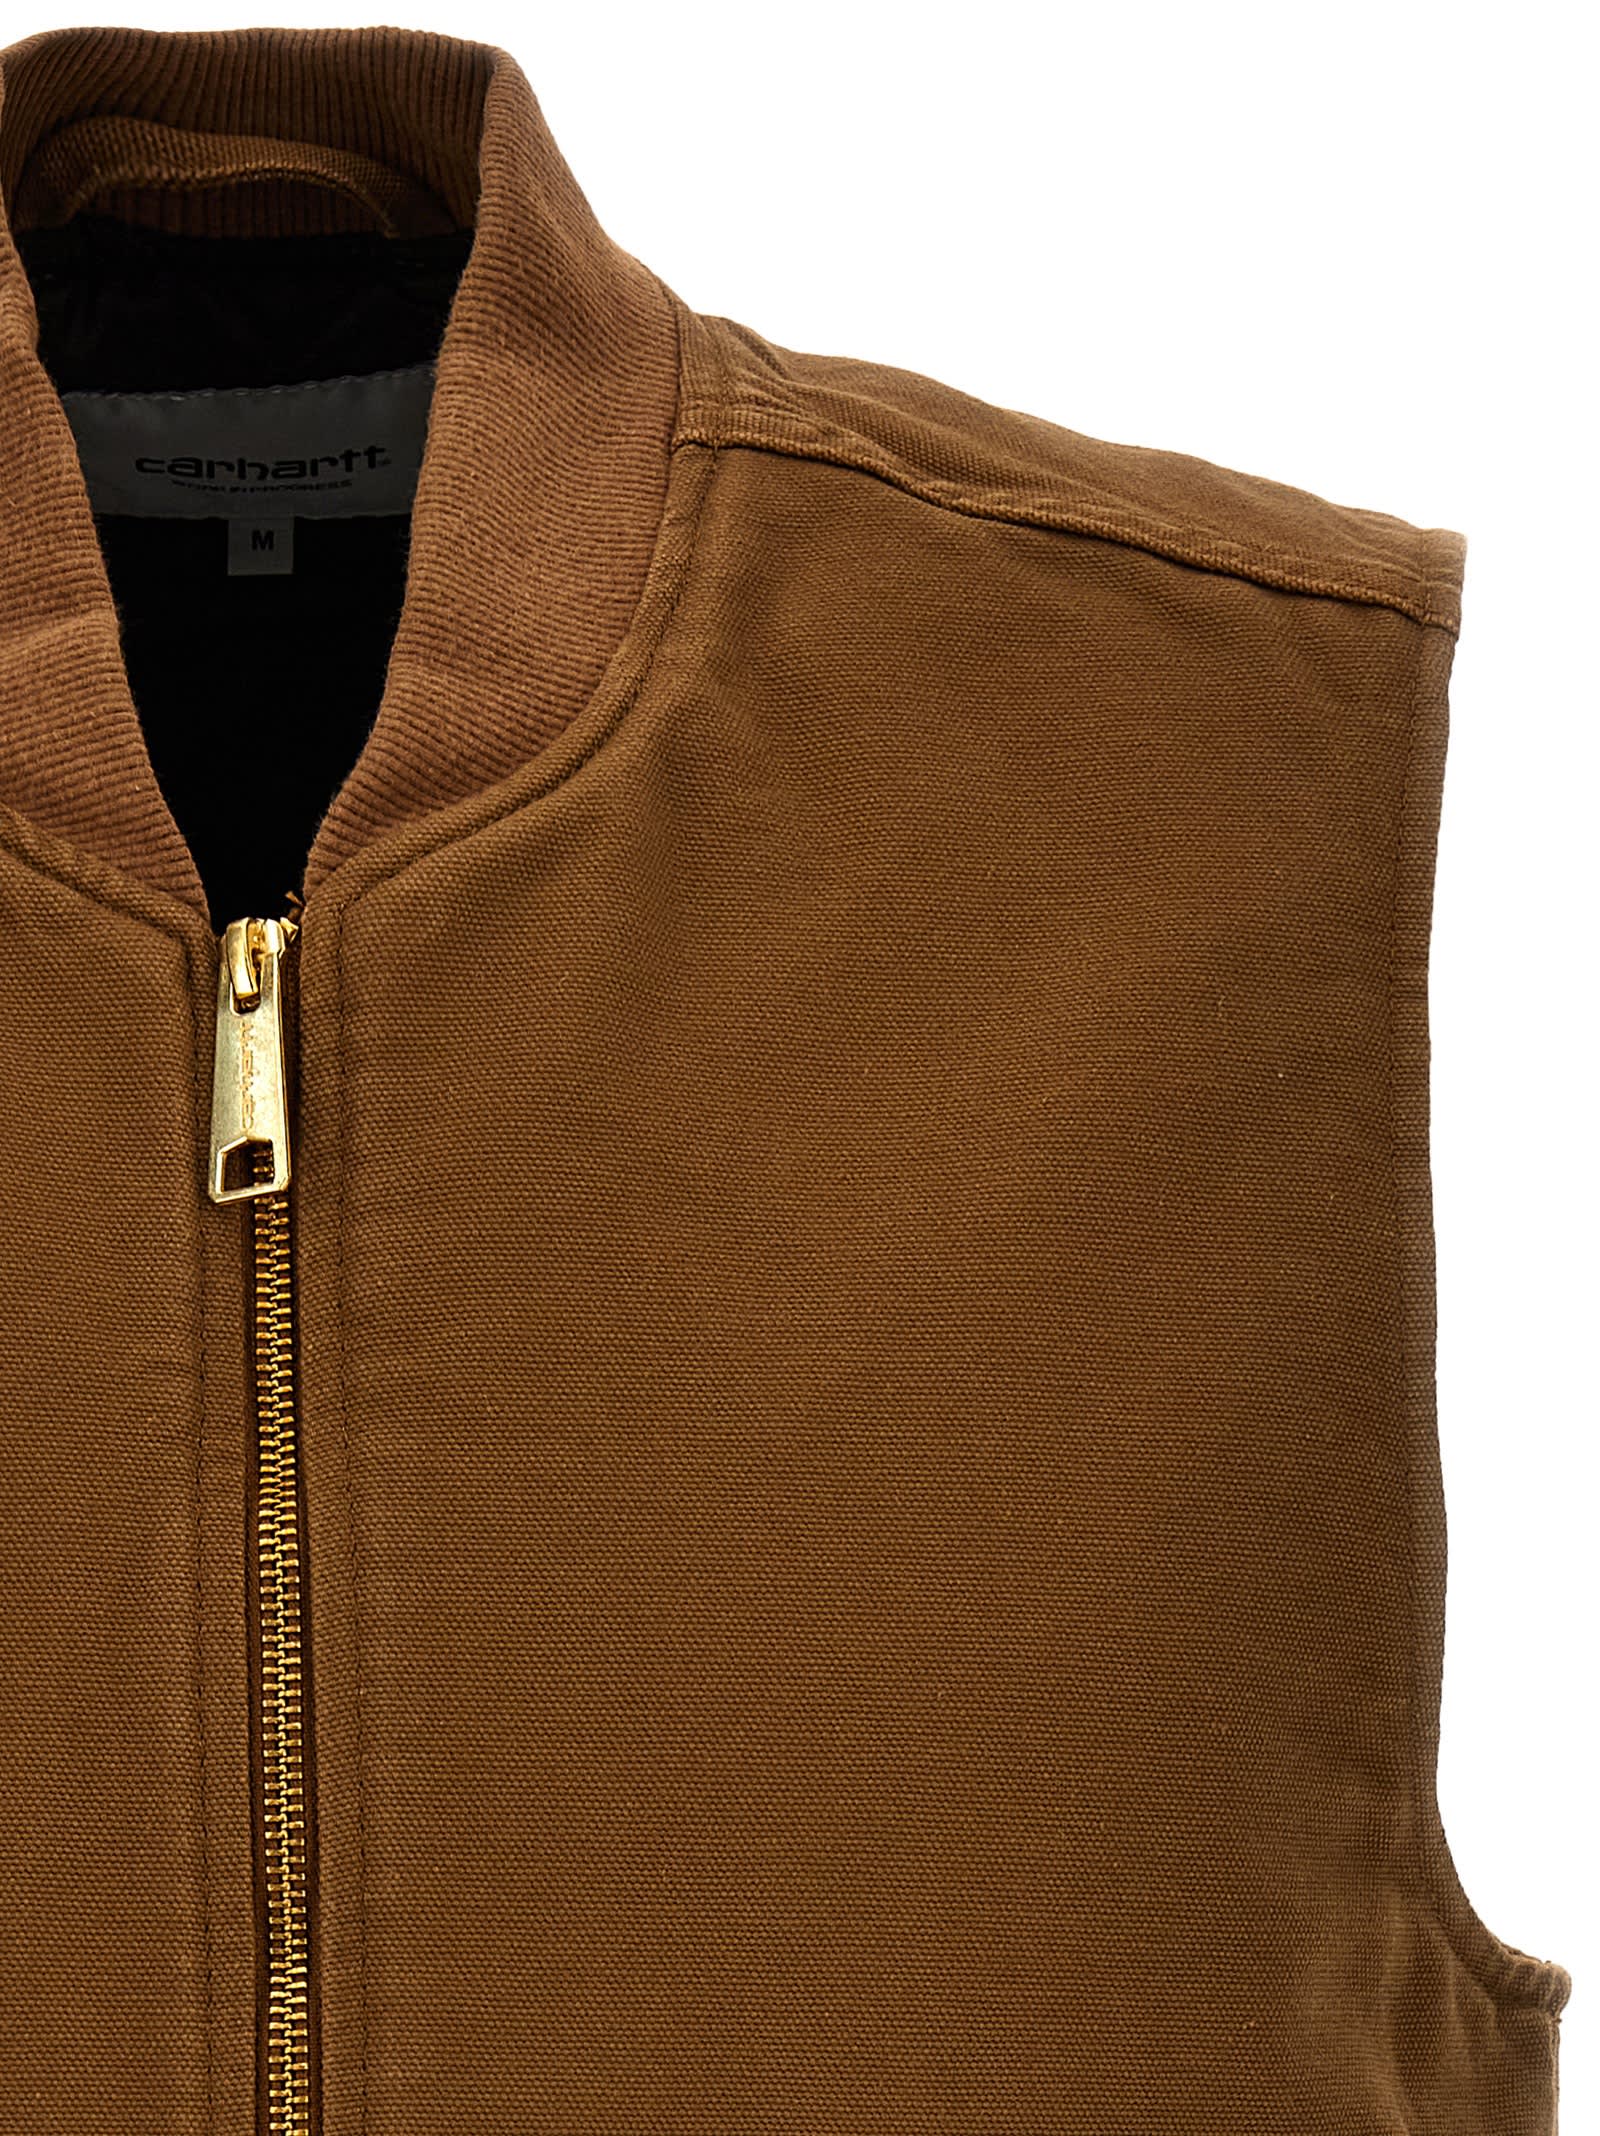 Shop Carhartt Classic Vest In Brown